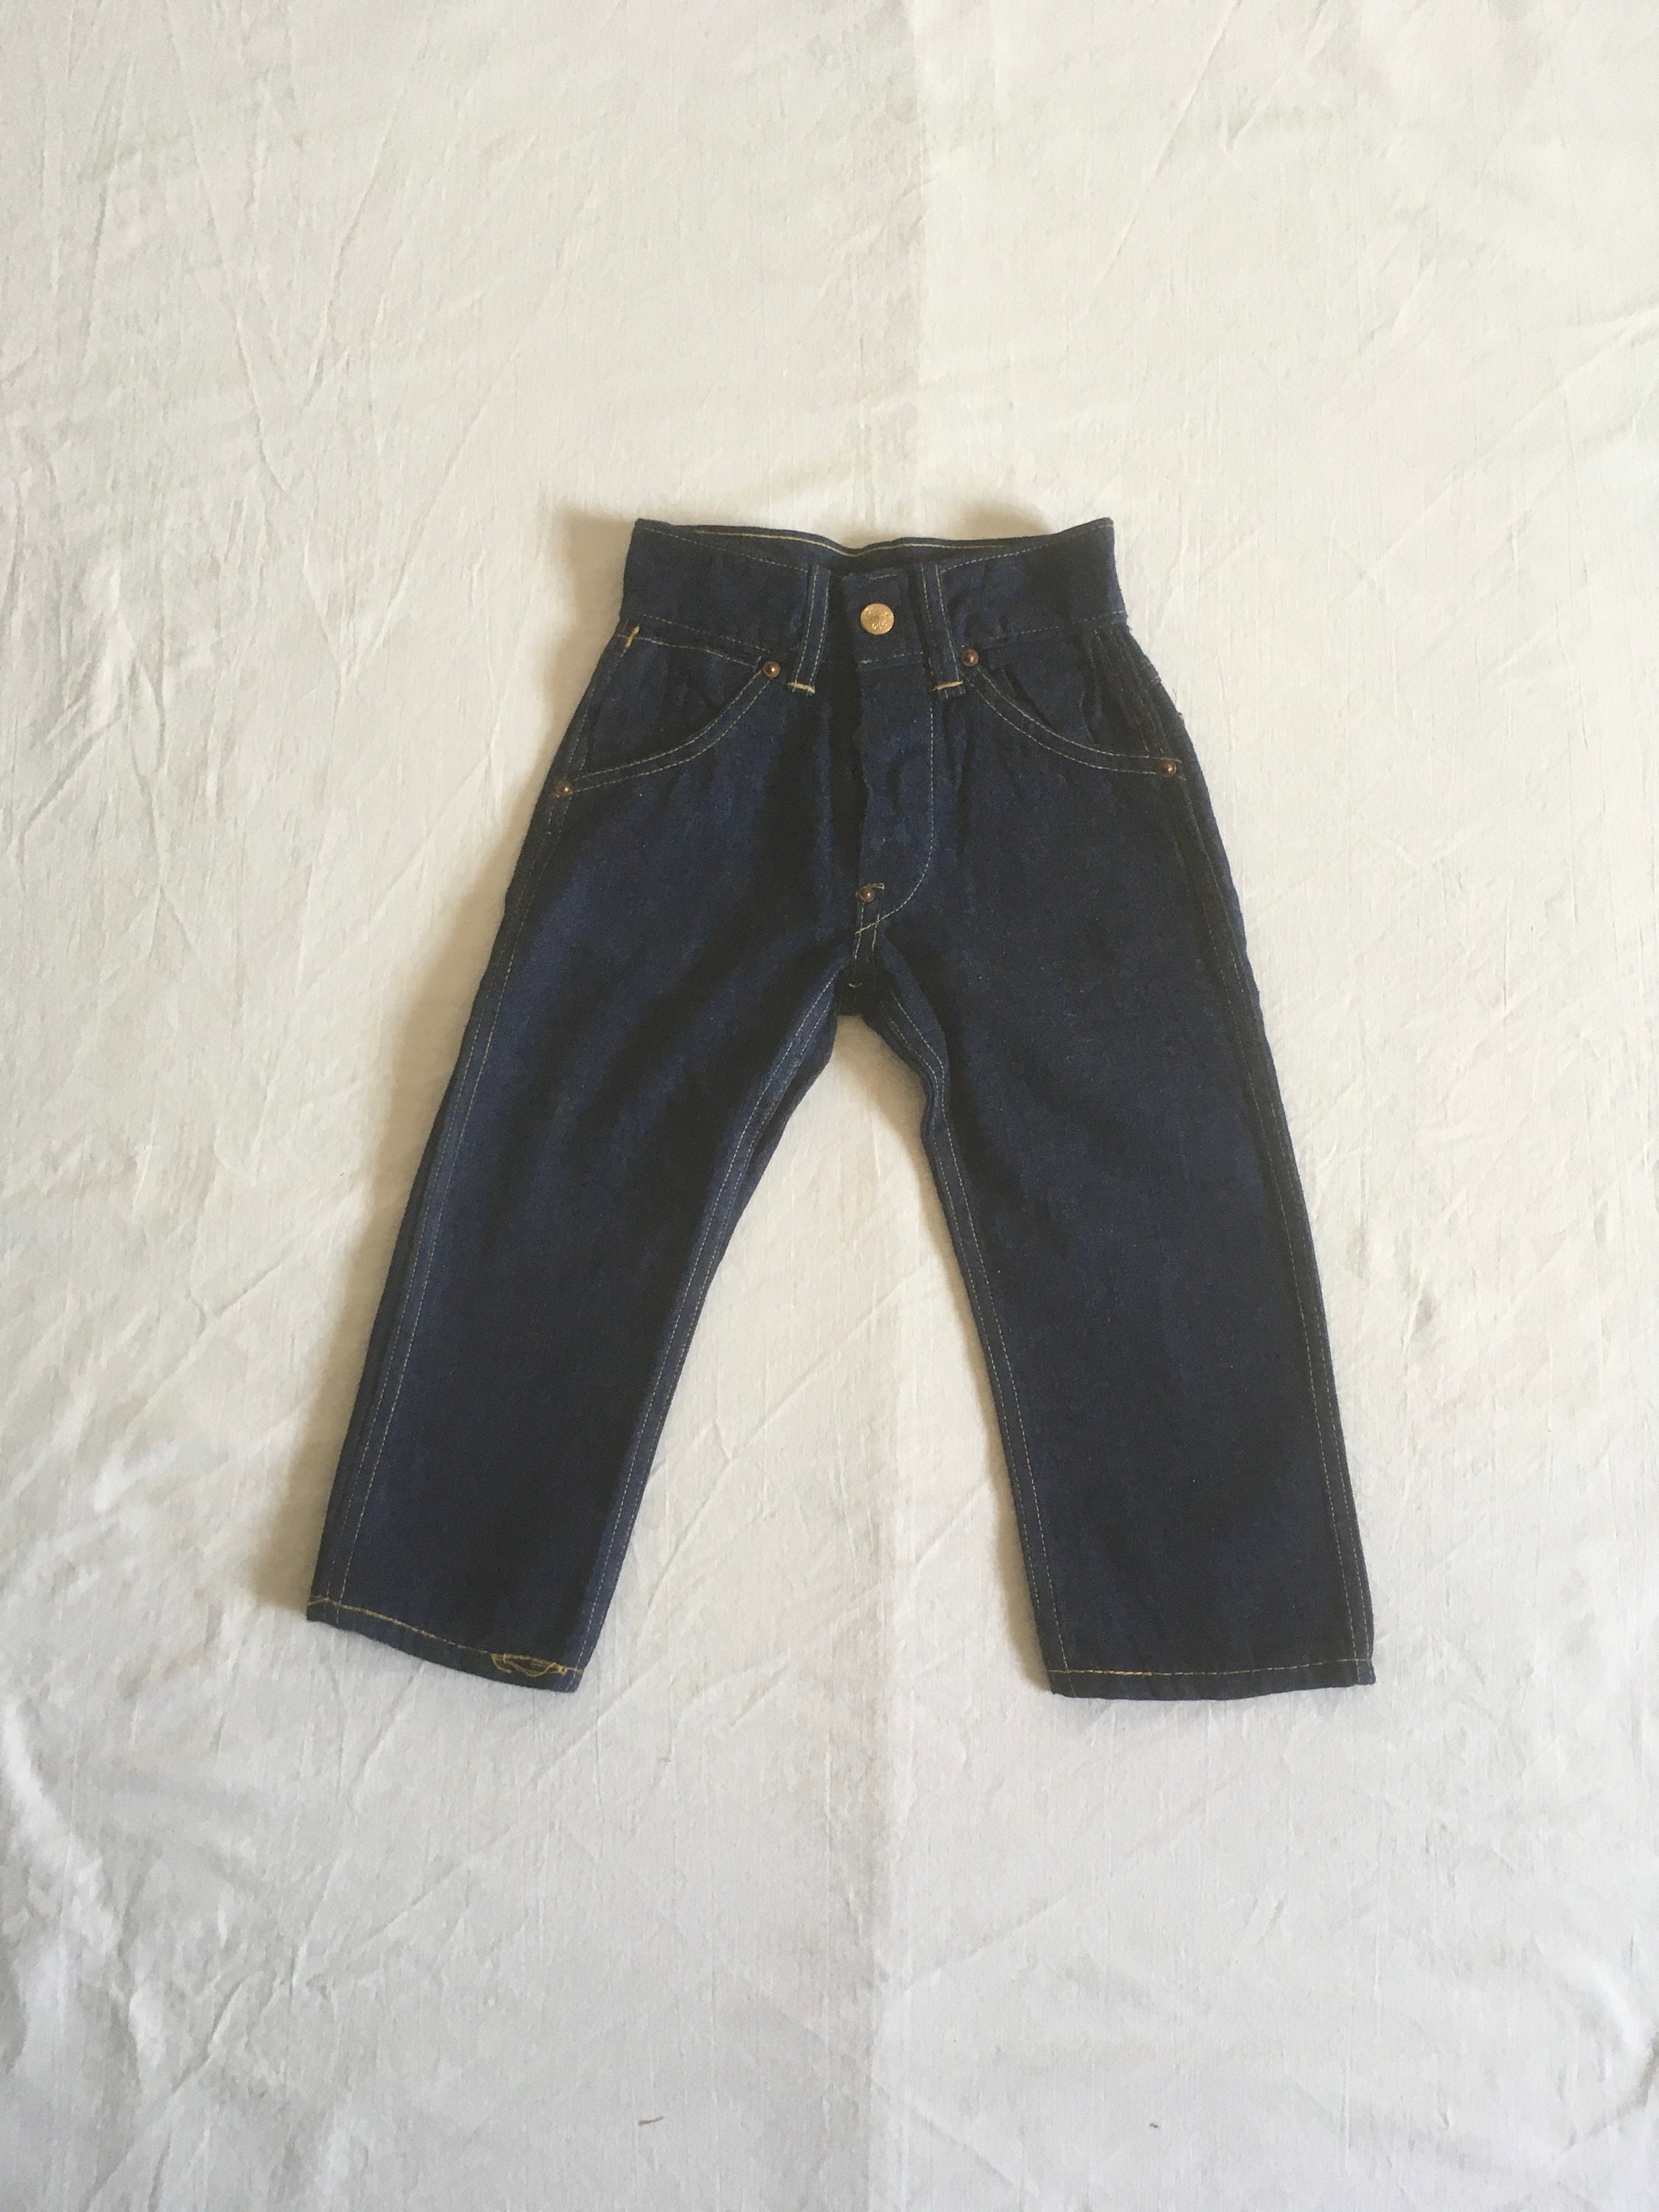 Jeans Buttons and Rivets – D.M. Buttons & Buttonholes